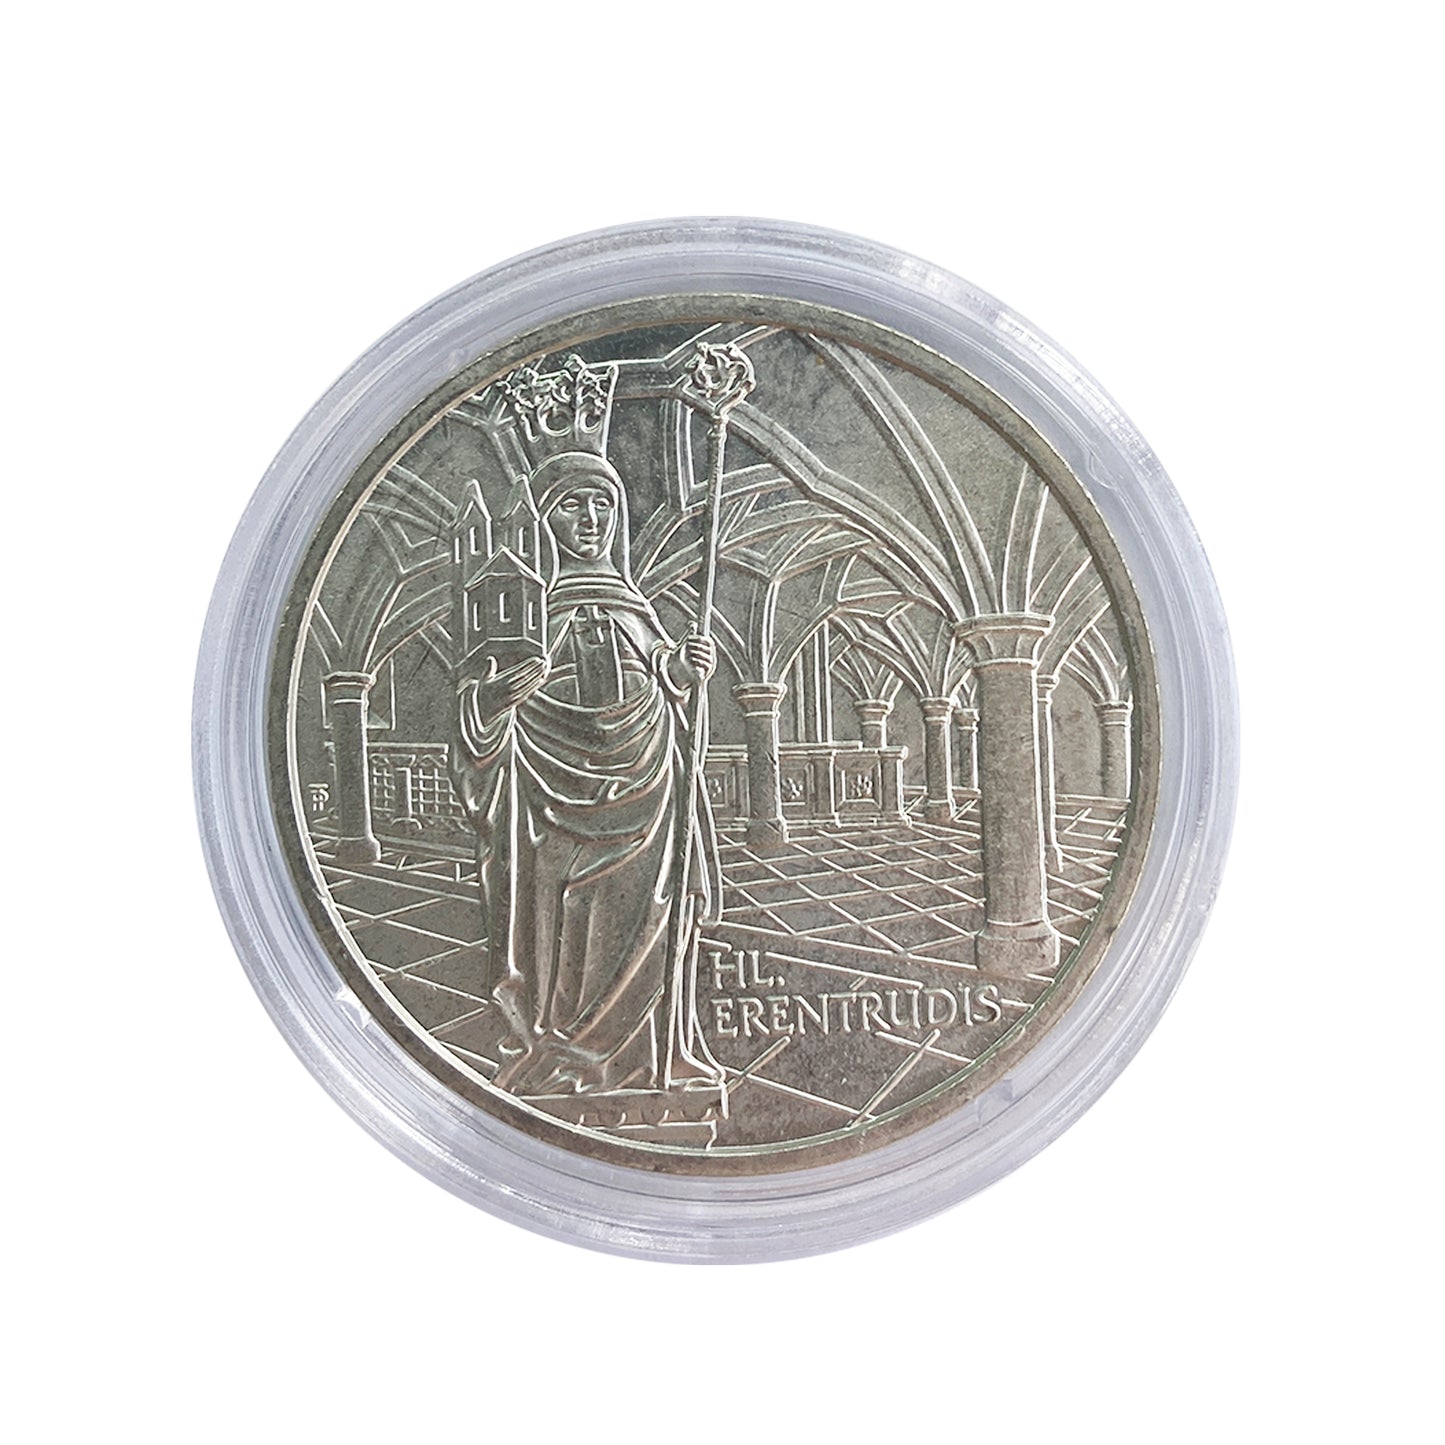 Austria - Moneda 10 euros plata 2006 - Abadía de Nonnberg